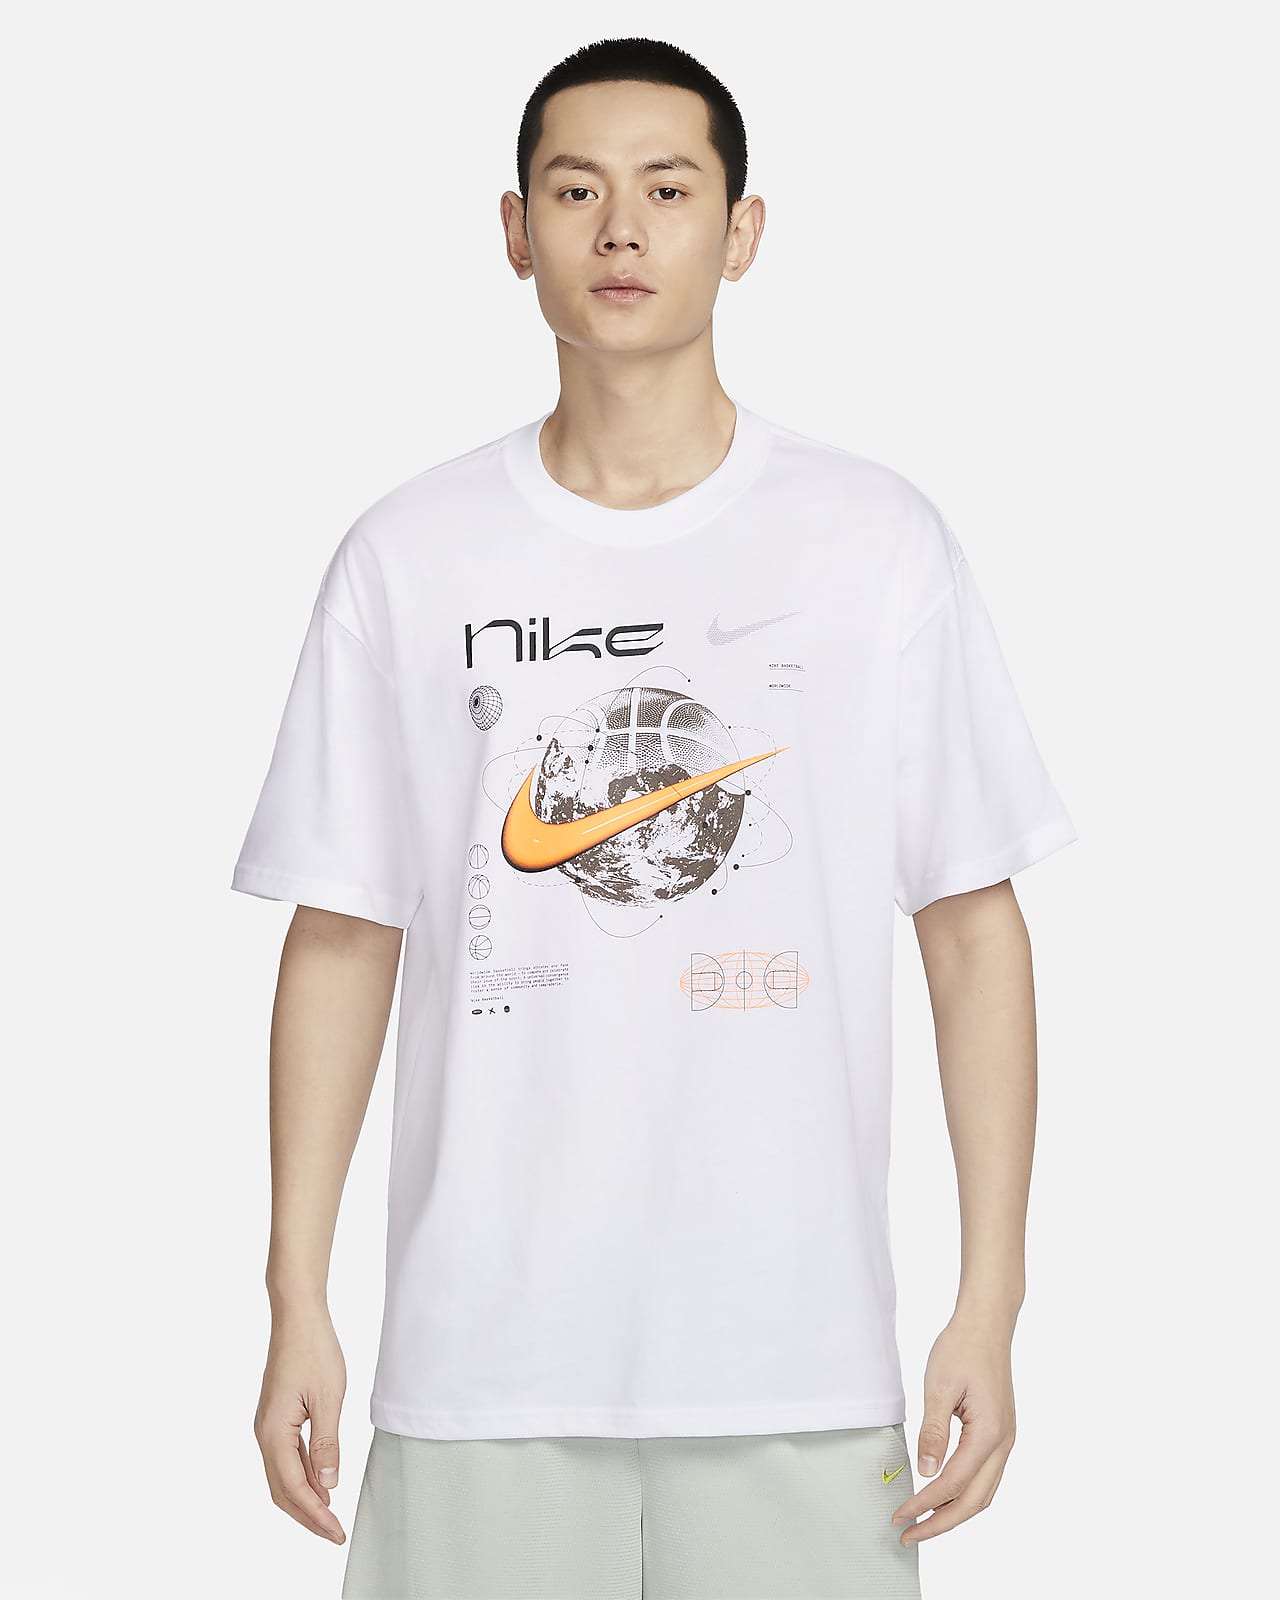 Nike 男款 Max90 籃球 T 恤